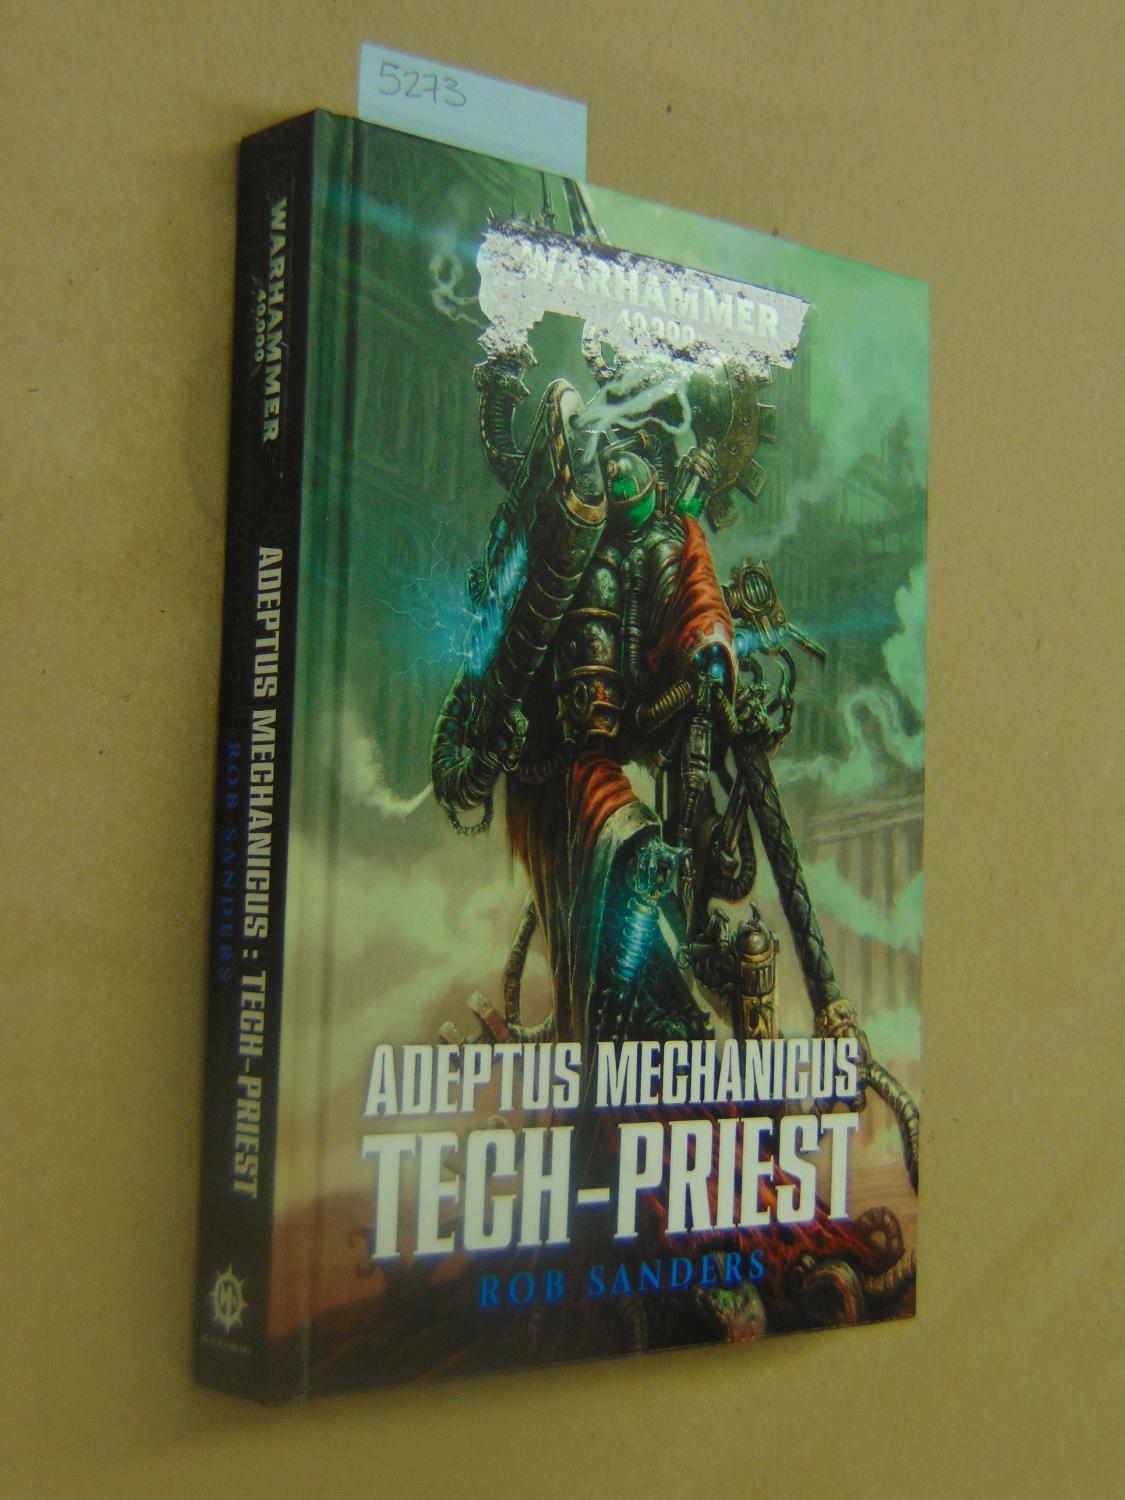 Adeptus Mechanicus (Warhammer 40,000) by Rob Sanders